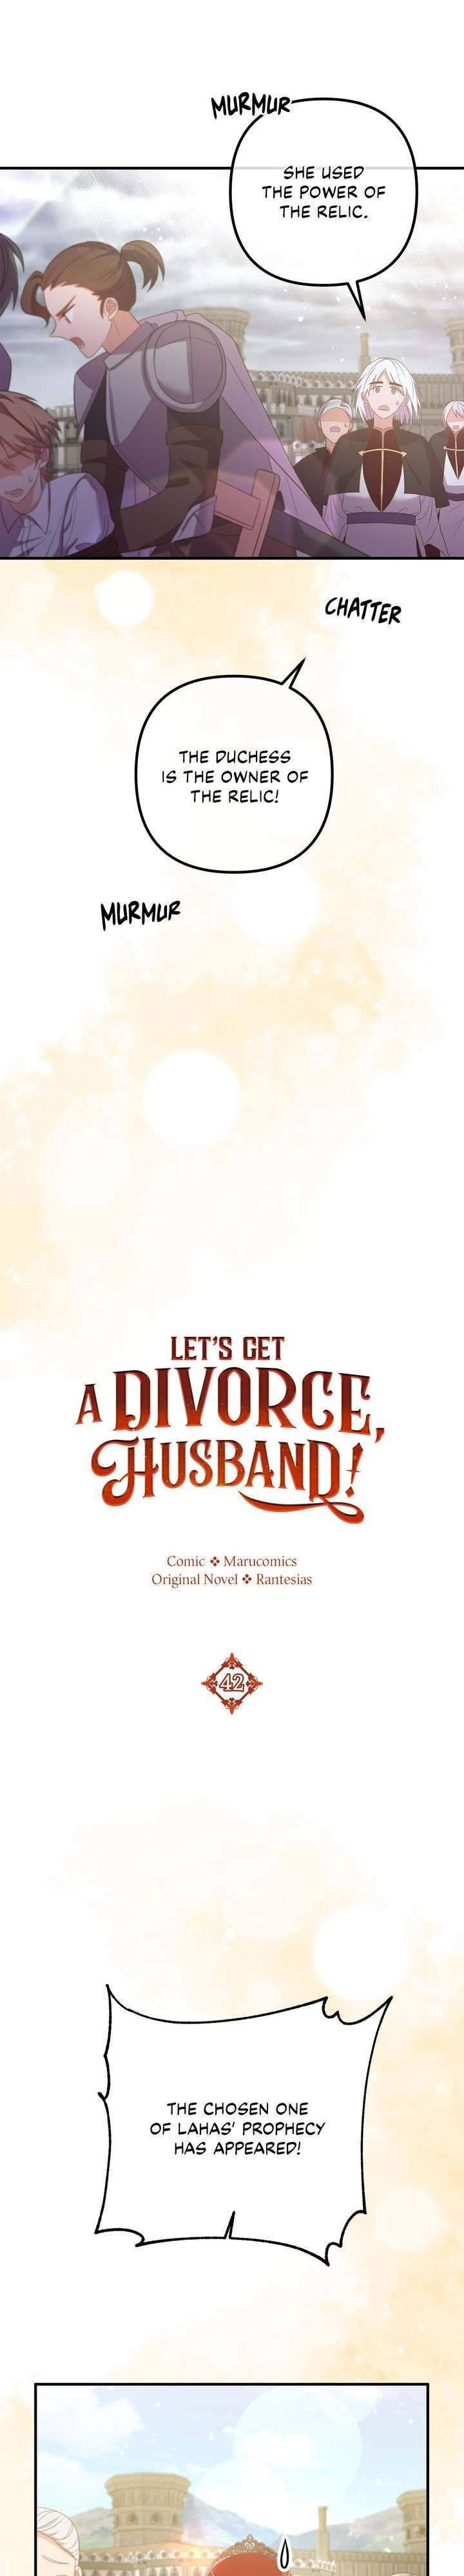 Divorce Me, Husband! Chapter 42 page 7